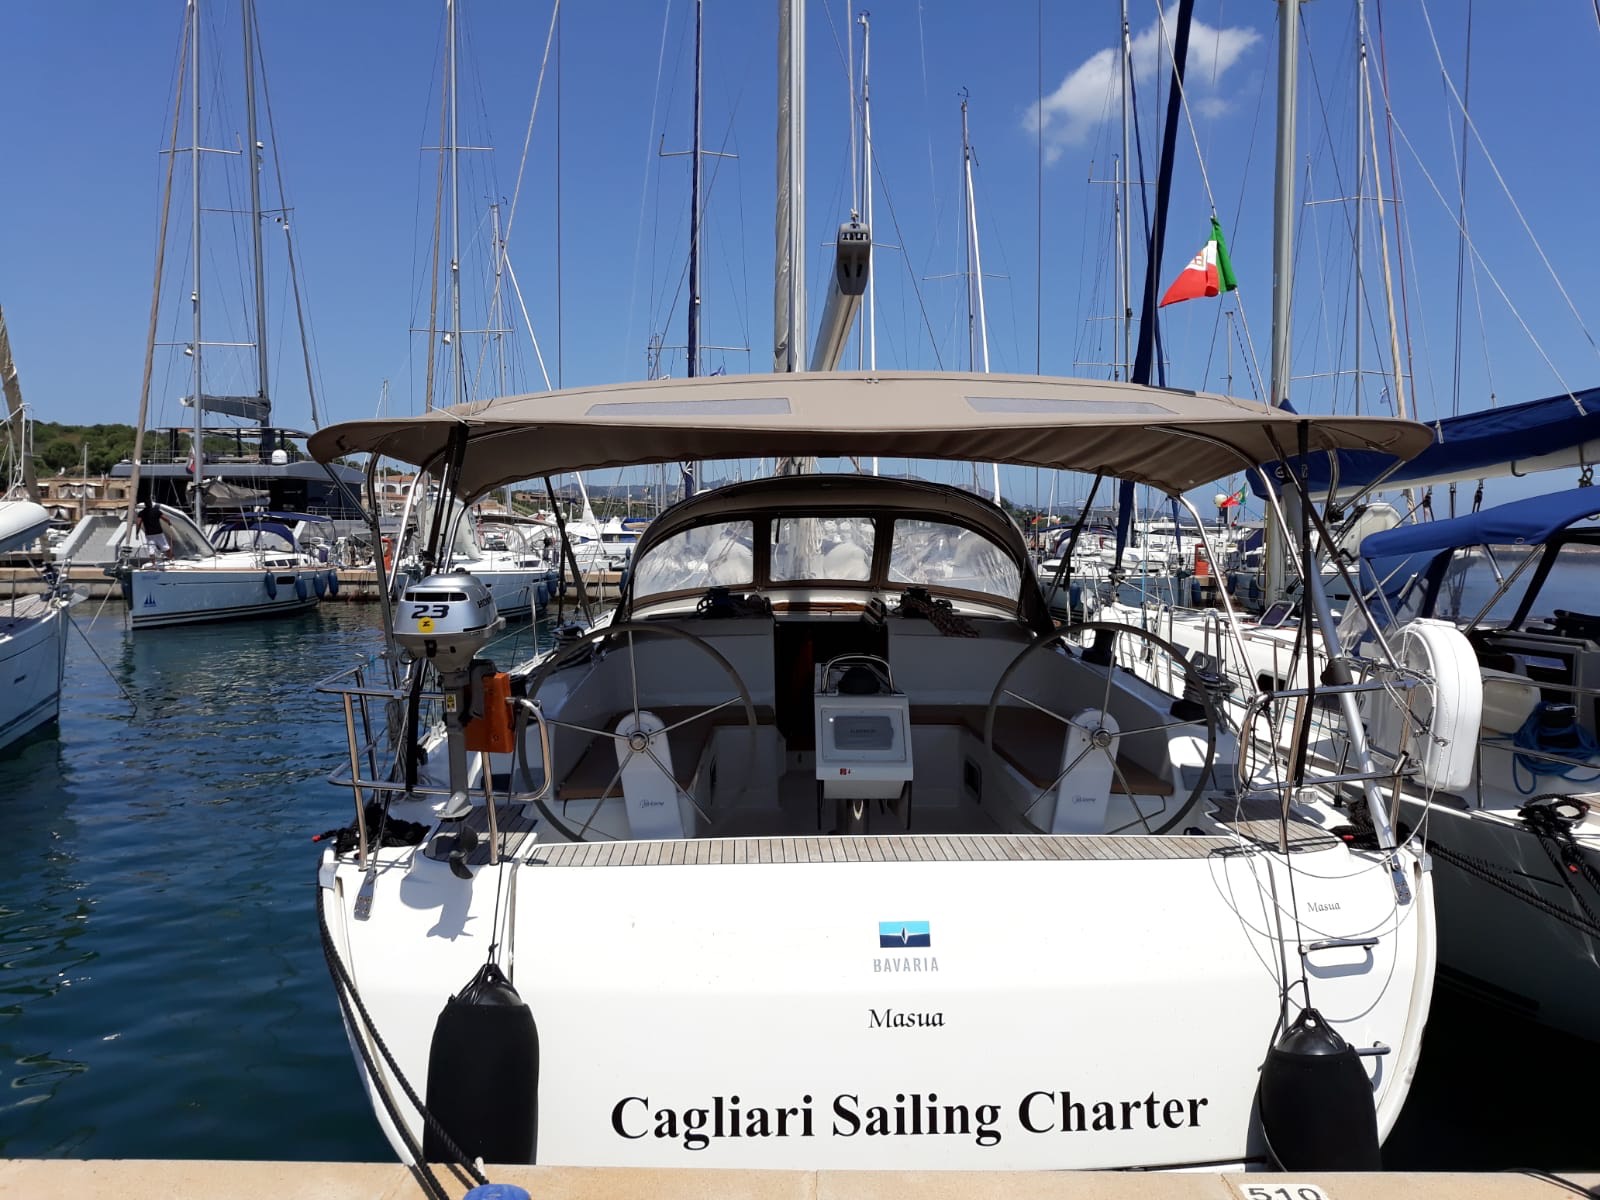 Bavaria Cruiser 46 - Yacht Charter Golfo Aranci & Boat hire in Italy Sardinia Costa Smeralda Golfo Aranci Marina dell'Isola 1